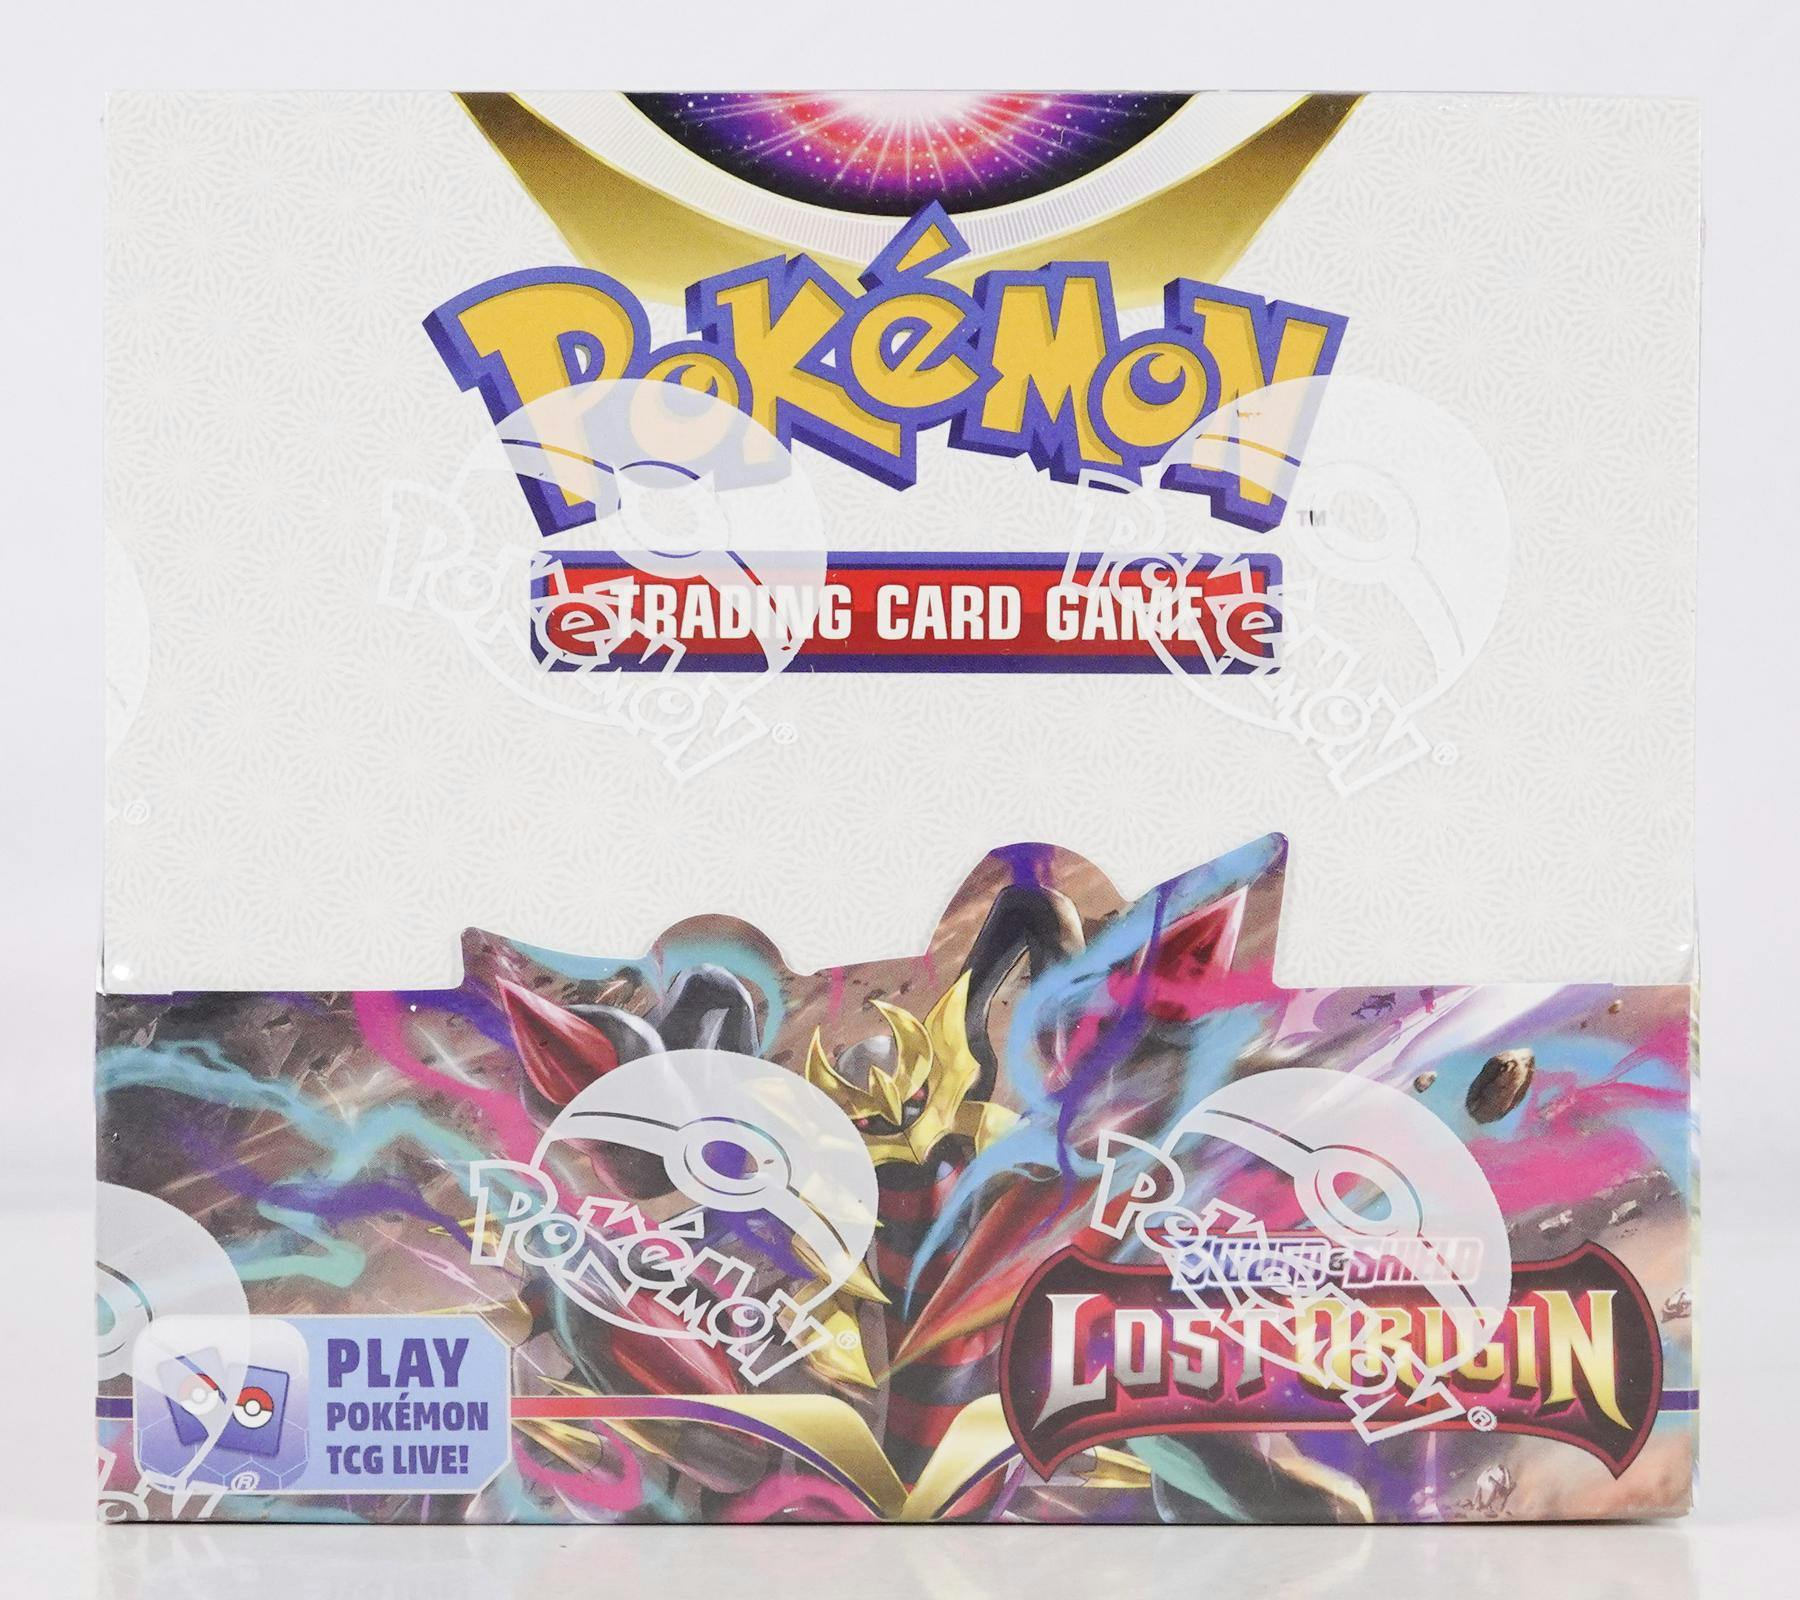 King's Gambit - PokemonCard